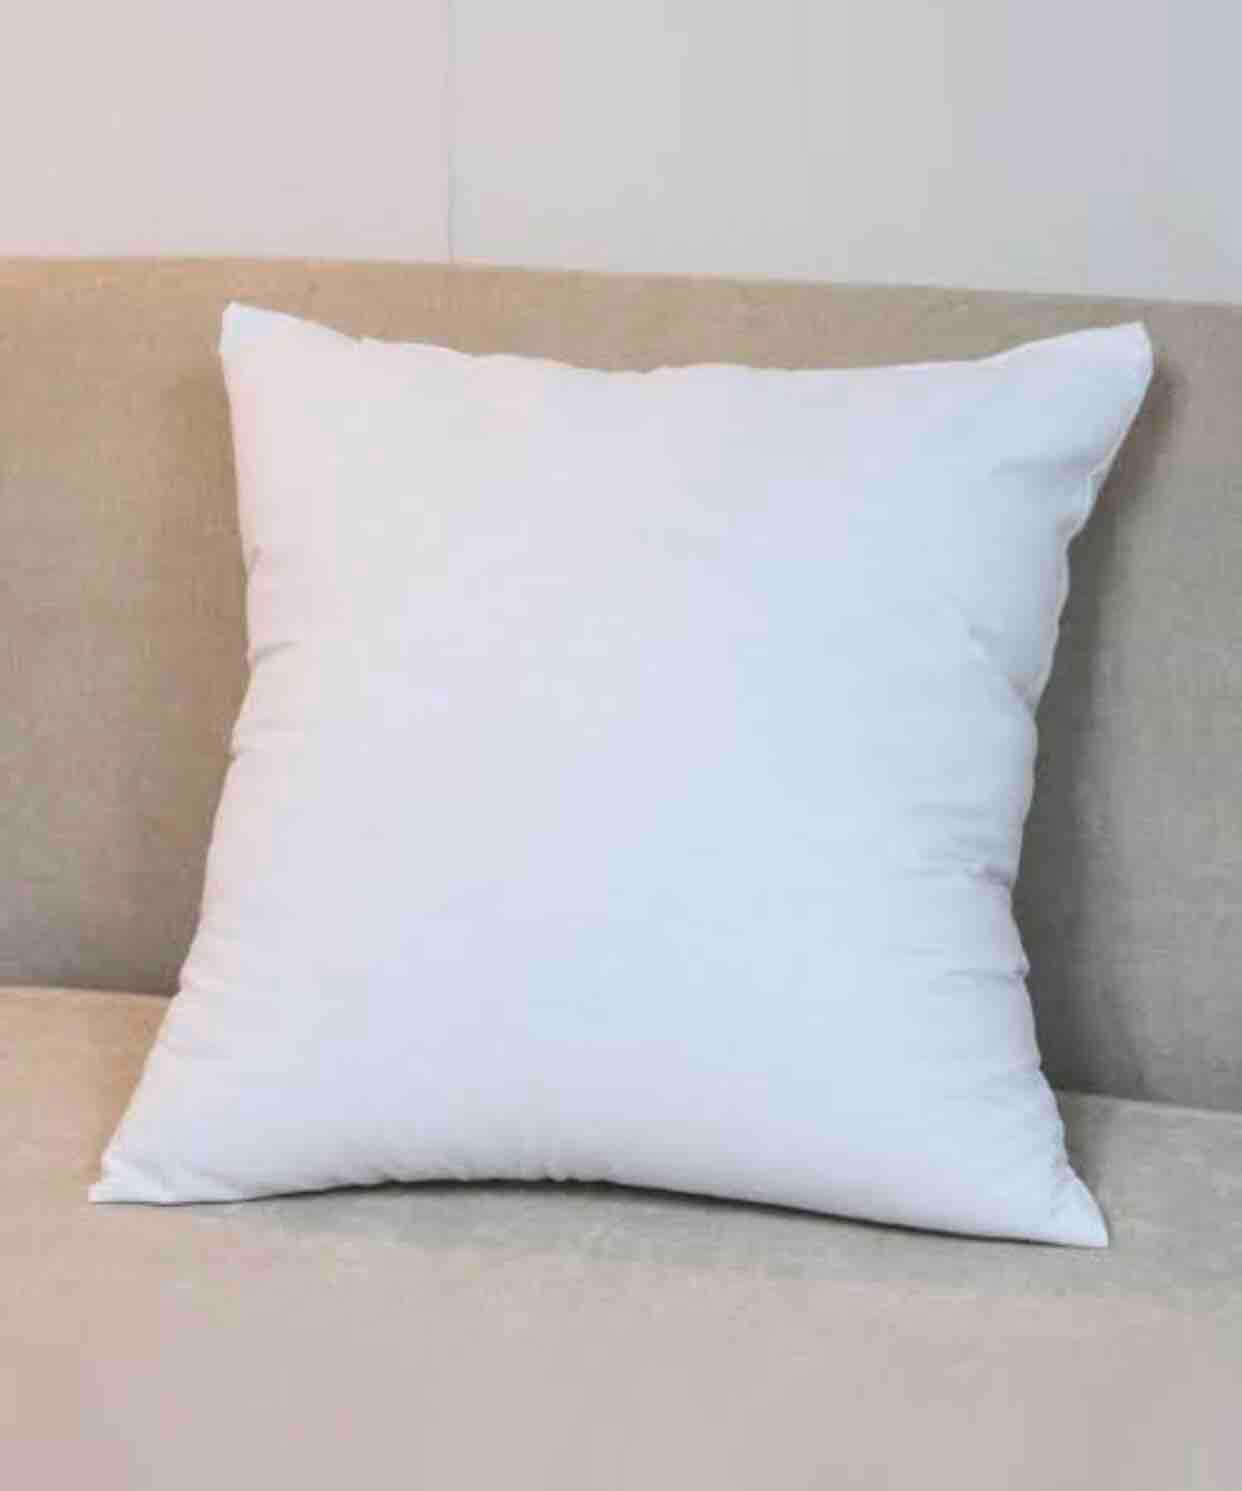 หมอนอิง ใยสงเคราะห์ ขนาด 45*45 cm หมอน หมอนอิงสีขาว หมอนอิงสีขาว หมอนตกแต่งบ้าน ตกแต่งบ้าน cushion cushions pillows pillow Modern style home decoration ของตกแต่ง ตกแต่งห้อง ของตกแต่งบ้าน ของตกแต่งห้อง ตกแต่งภายใน ตกแต่ง ตกแต่งบ้าน ของตกแต่งบ้าน